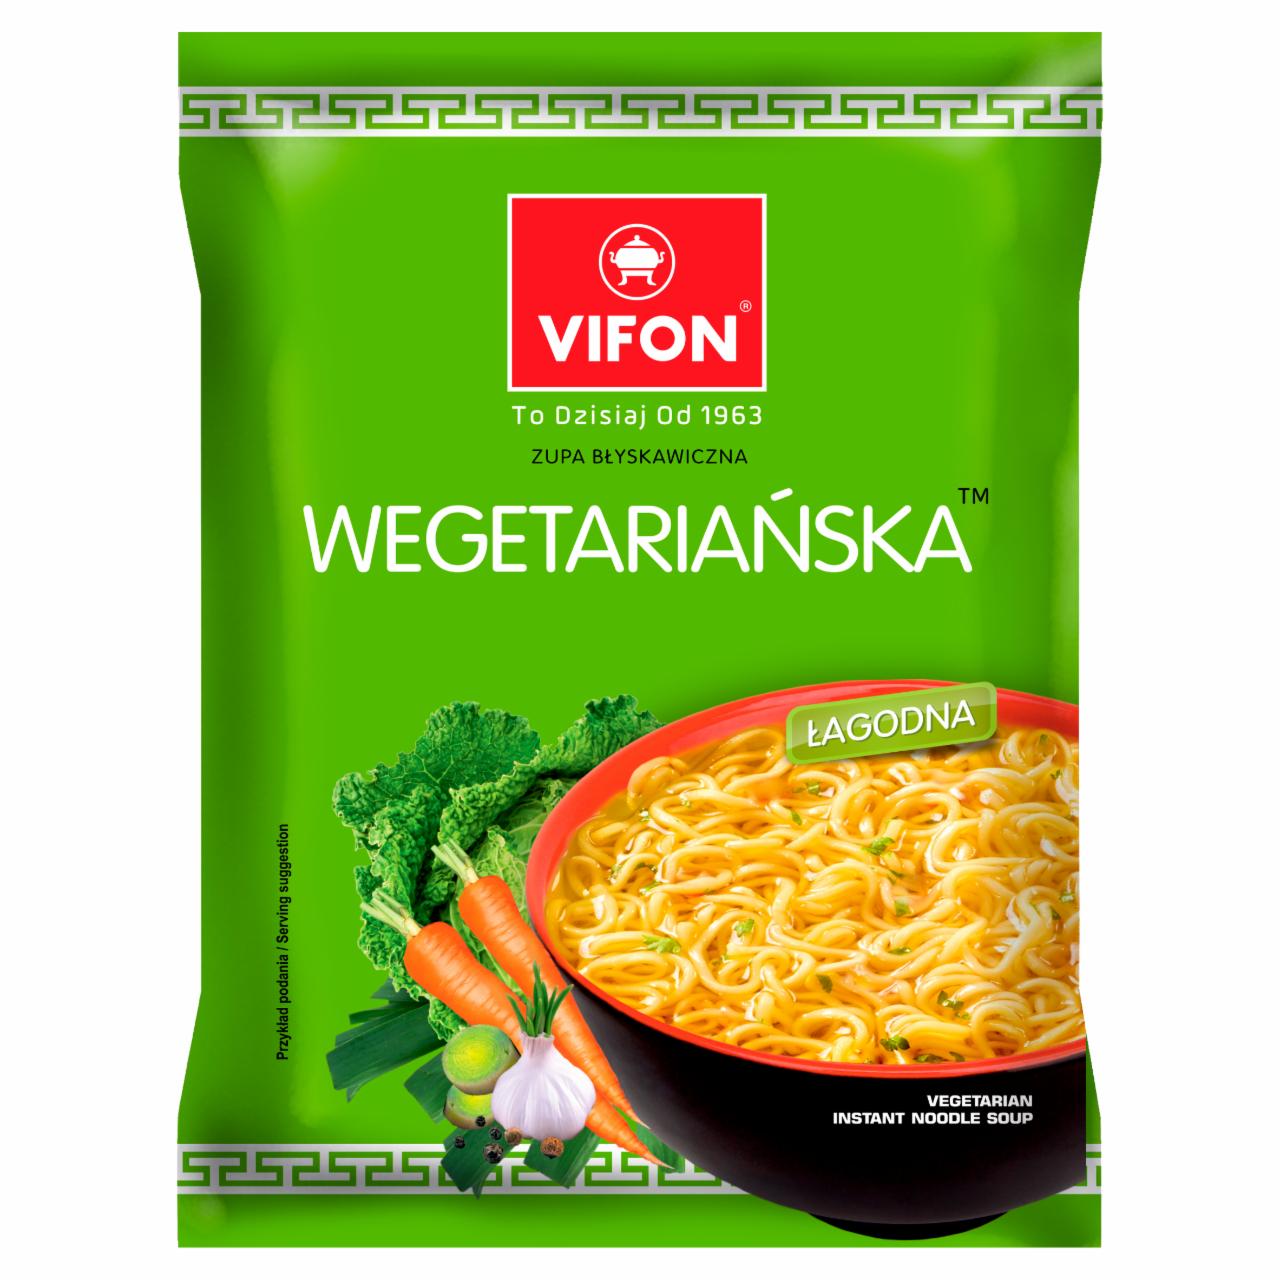 Zdjęcia - Zupa błyskawiczna wegetariańska 70 g Vifon